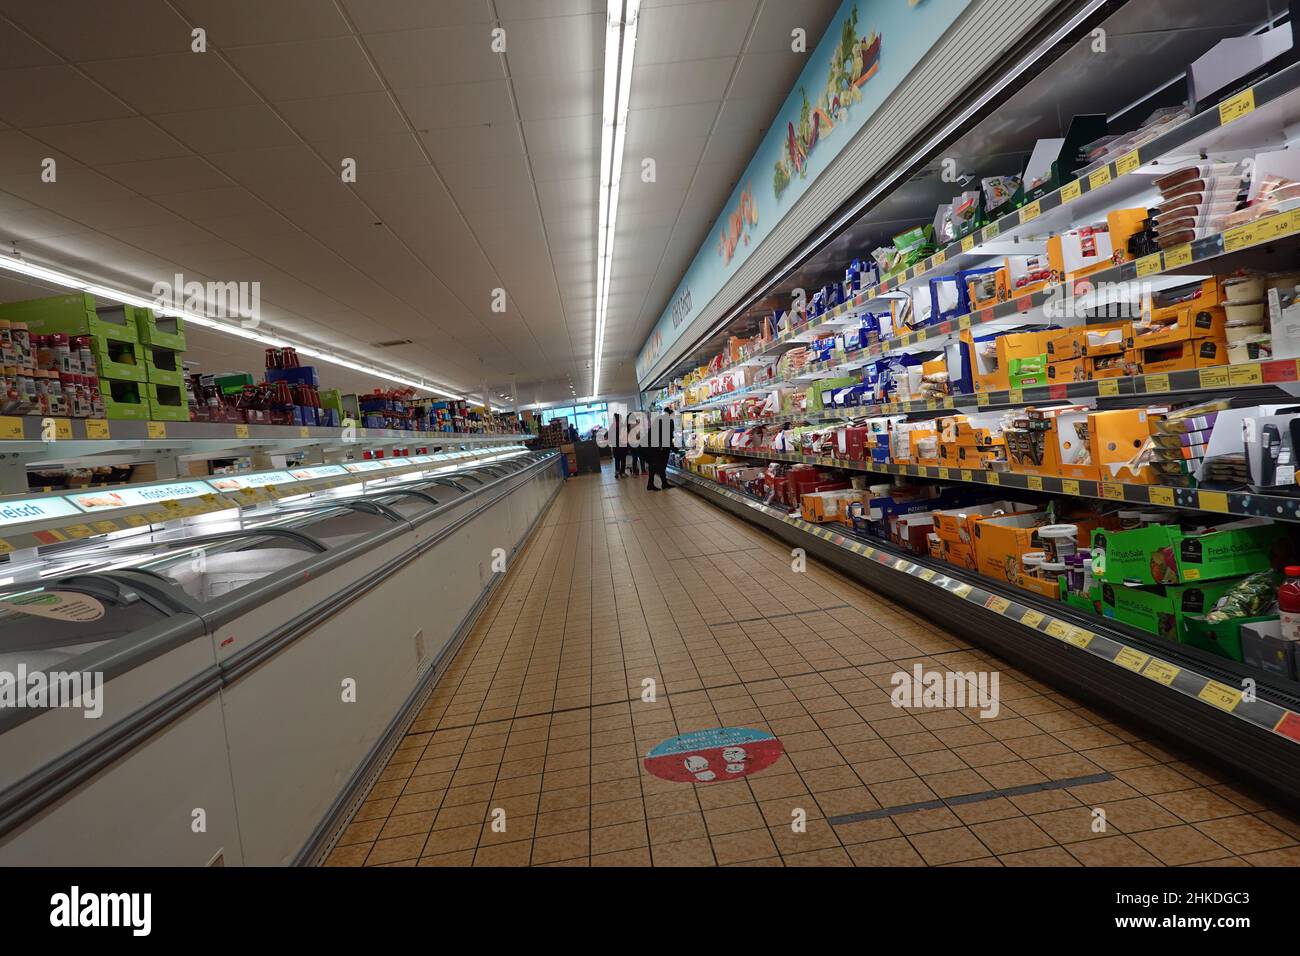 Kühltheke in einem Supermarkt - Symbolbild Banque D'Images